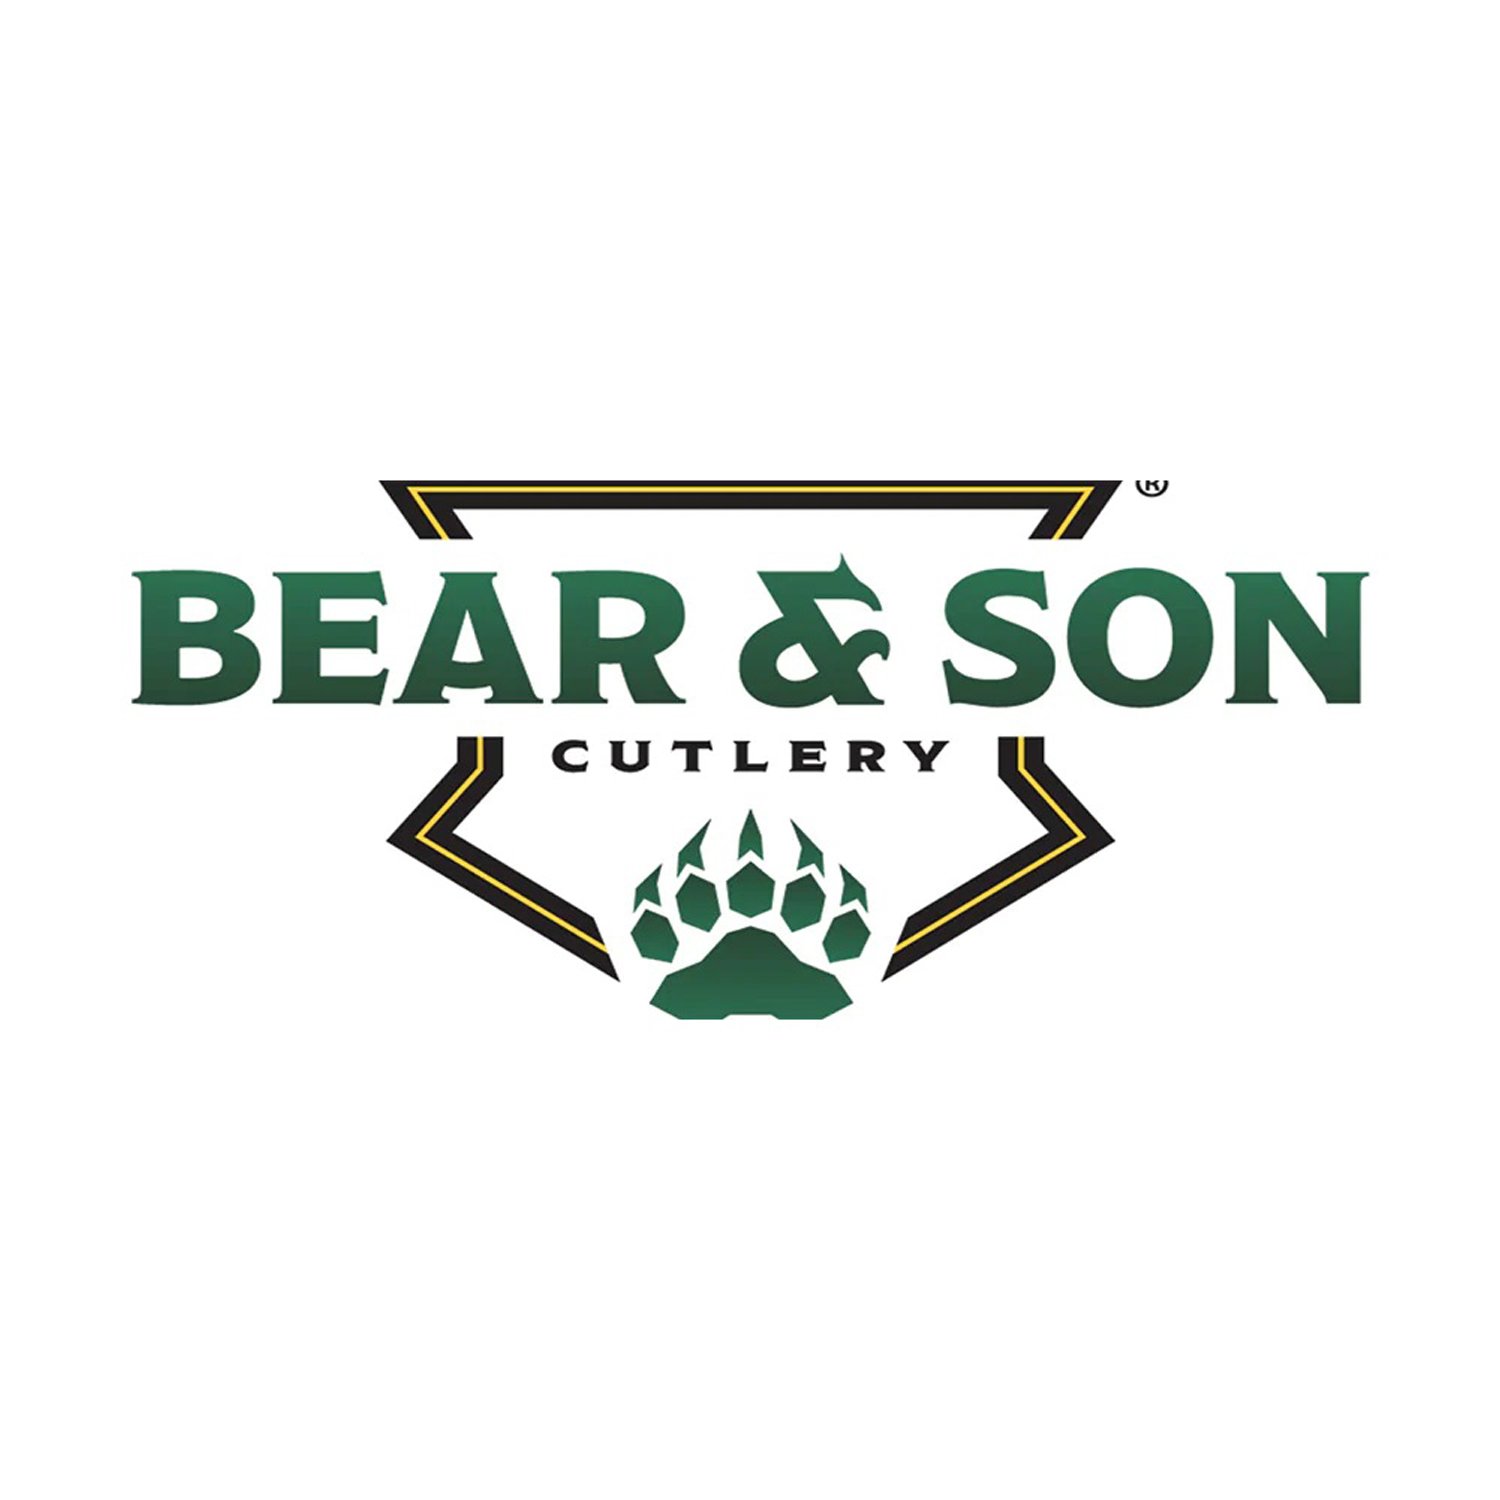 BEAR AND SON CUTLERY